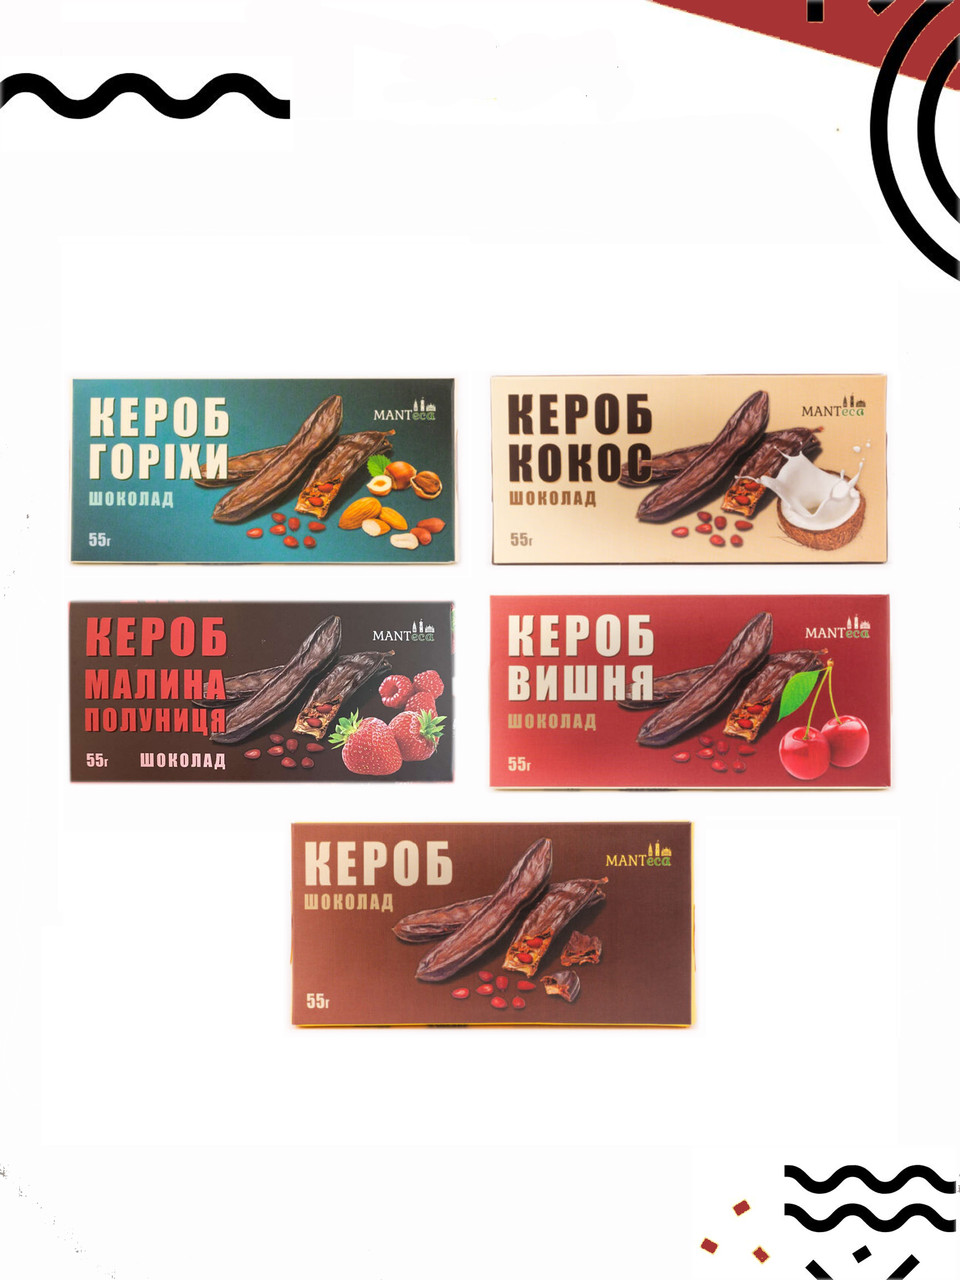 Набір. Шоколад з кероба, з 5 шт різник видів, без цукру, MANTeca, 55 г, Україна.